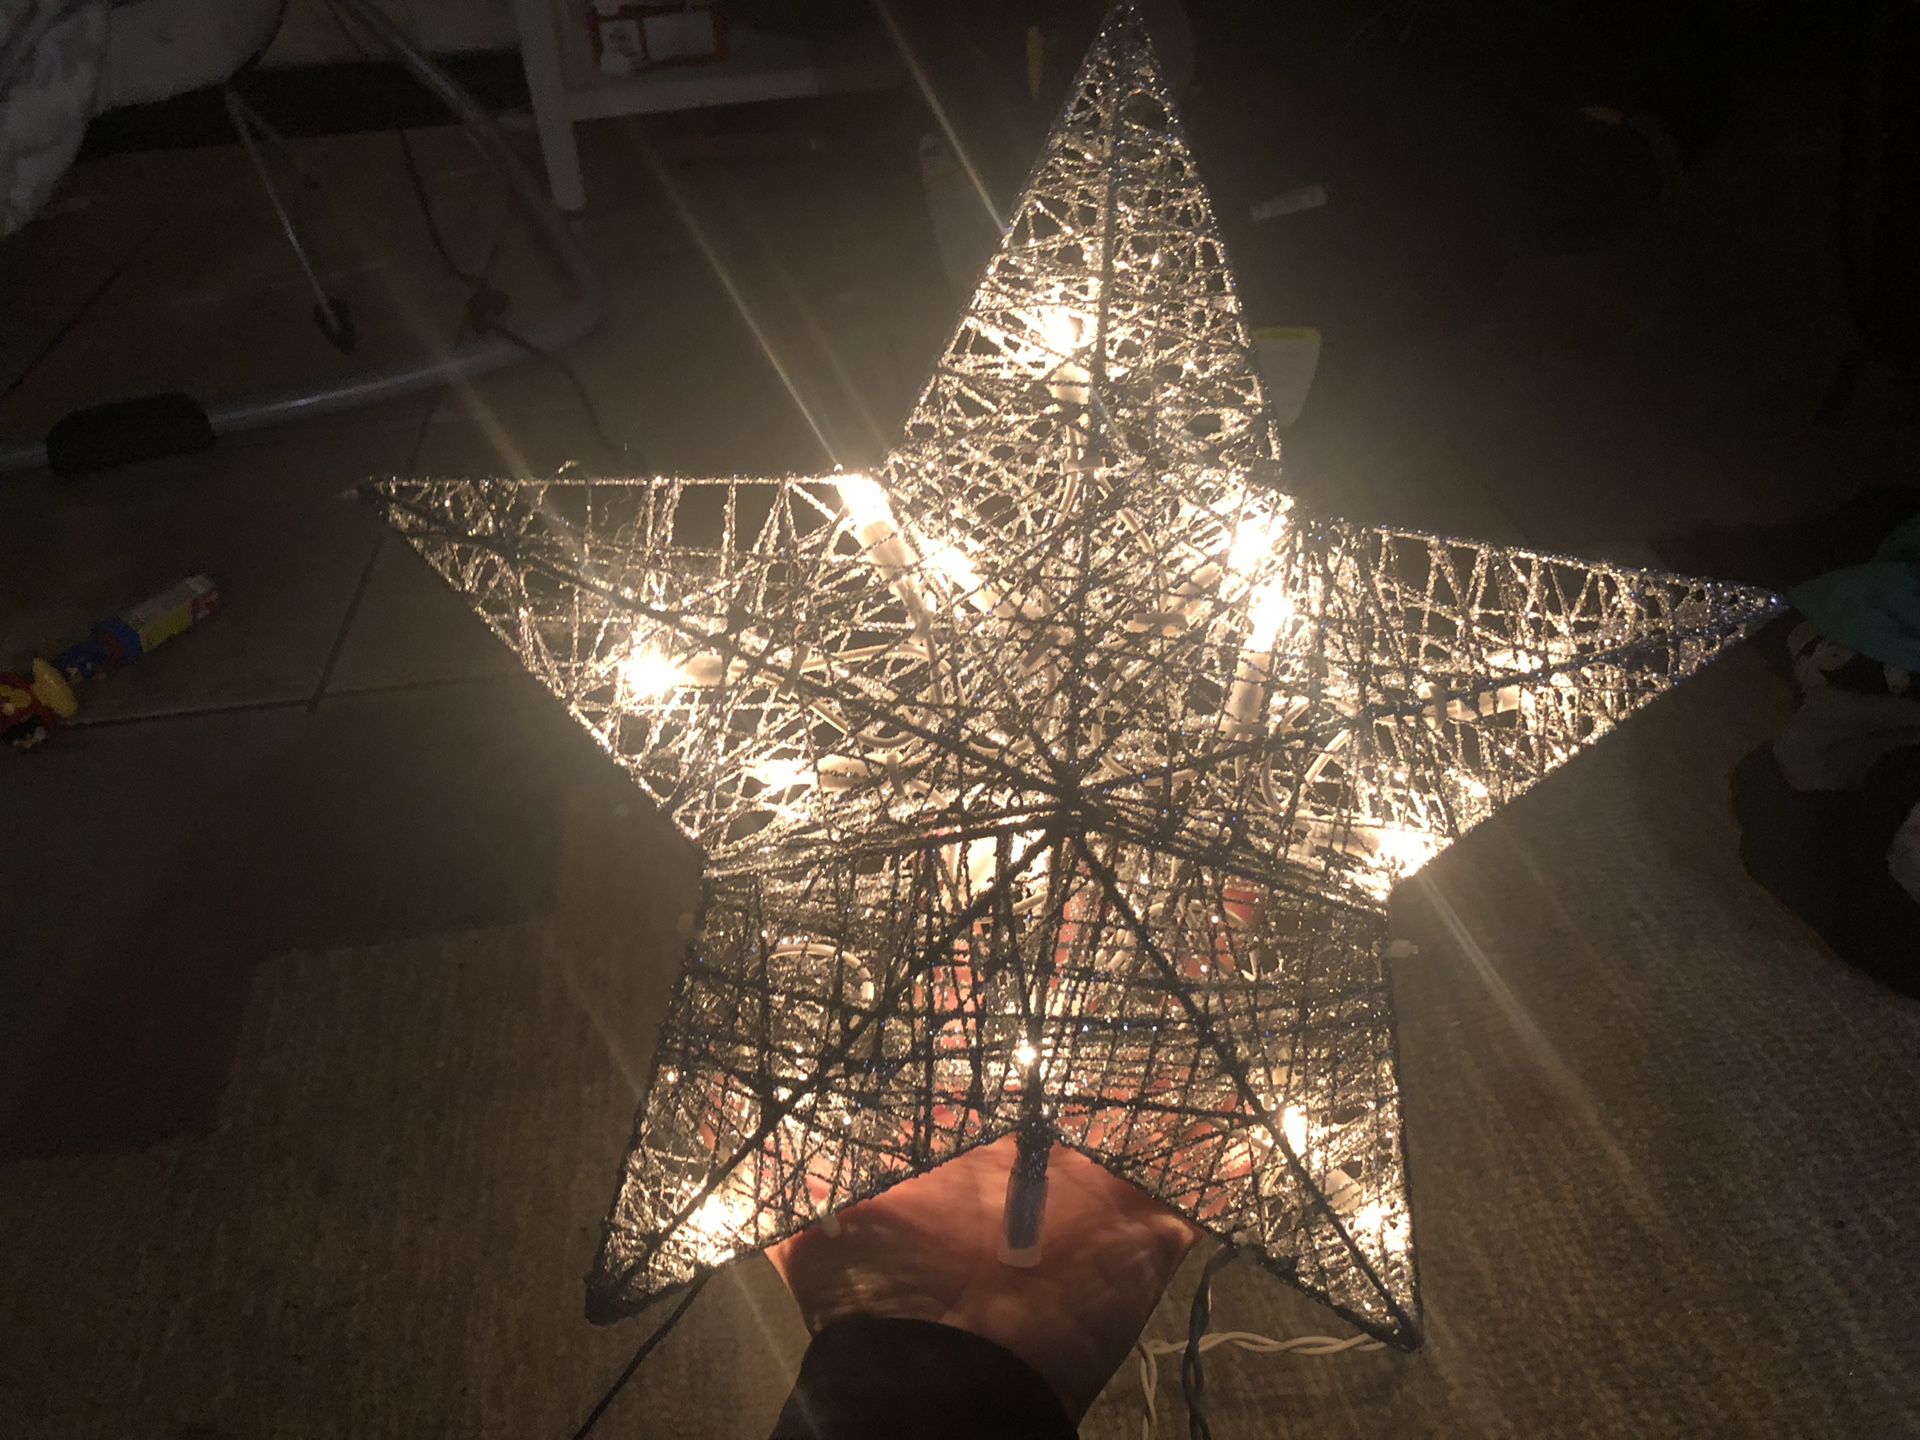 Christmas star lit